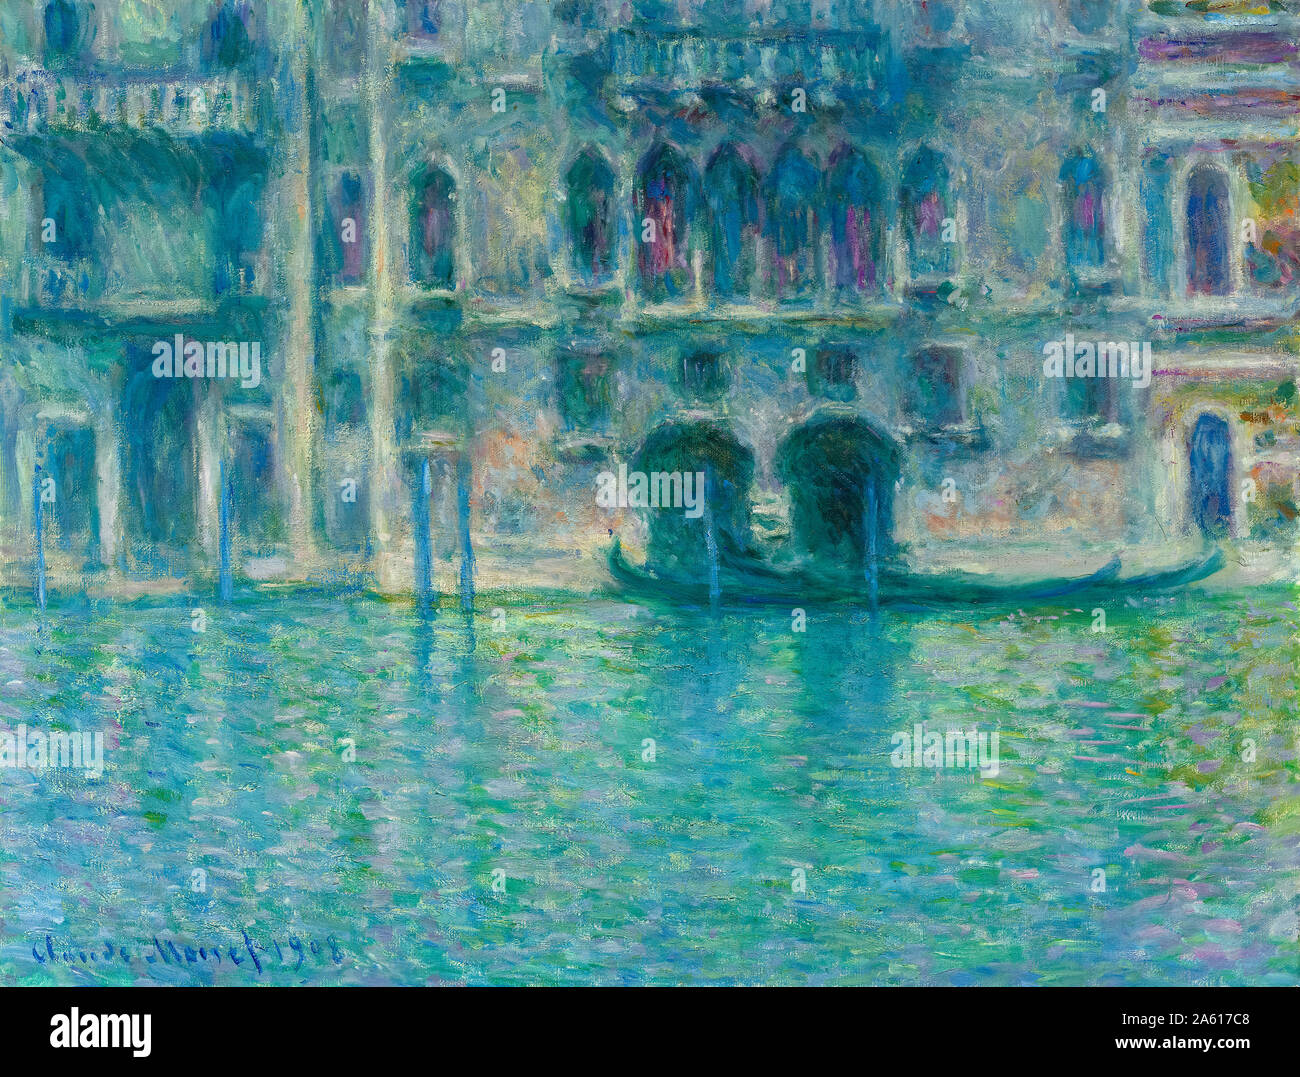 Claude Monet, Palazzo da Mula, Venise, peinture, 1908 Banque D'Images